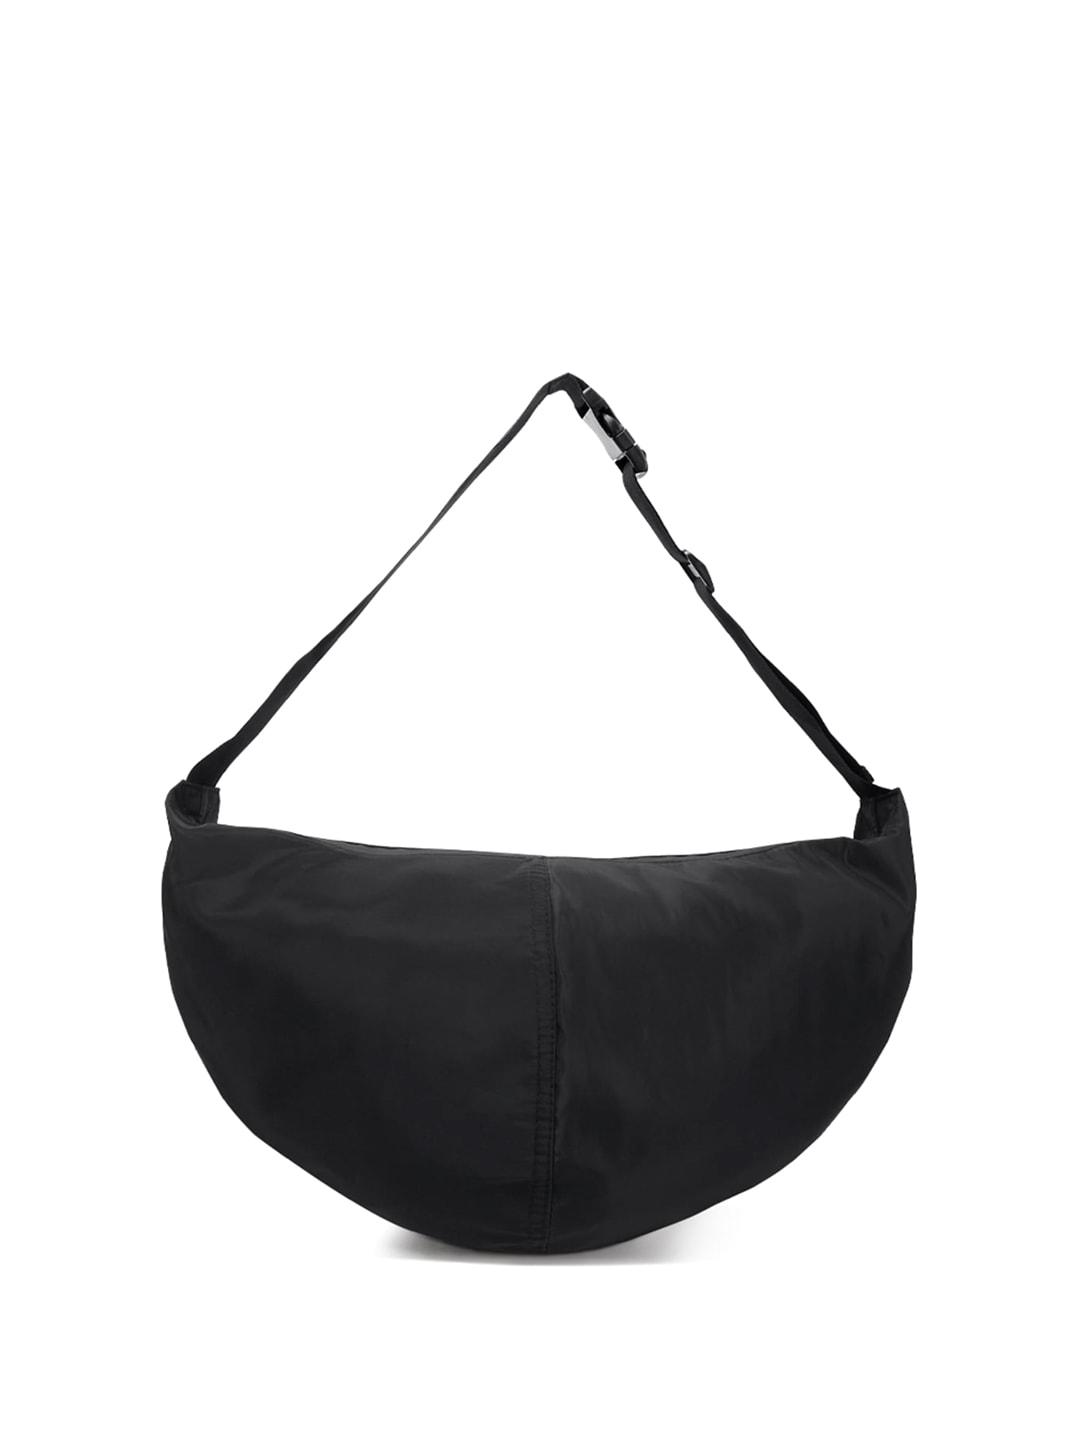 london rag half moon shoulder bag with adjustable strap